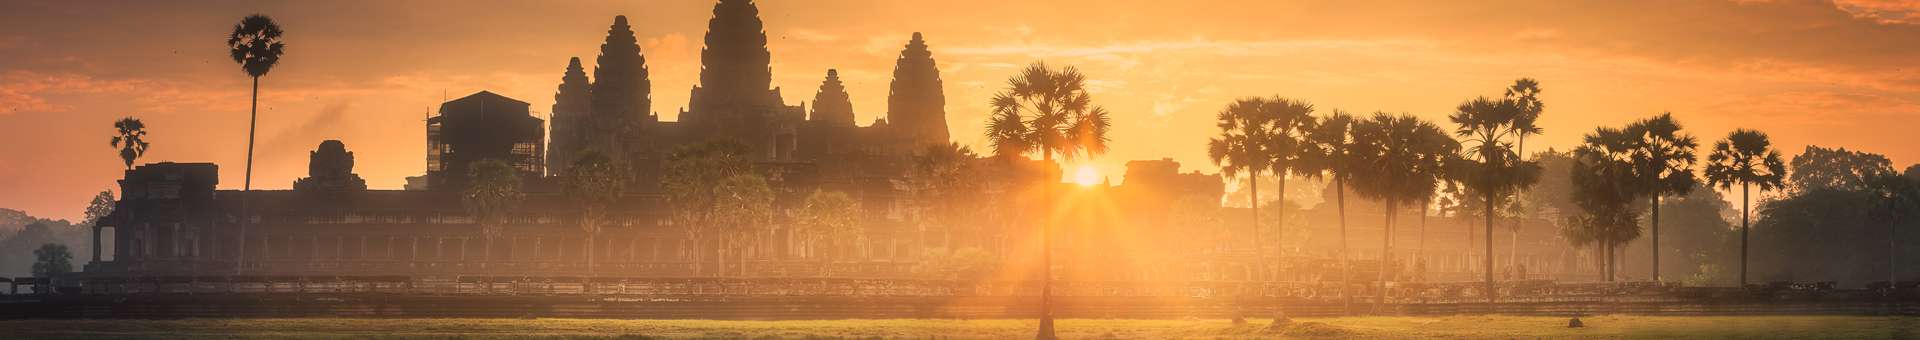 Rechercher des informations WHOIS sur les noms de domaine au Cambodge